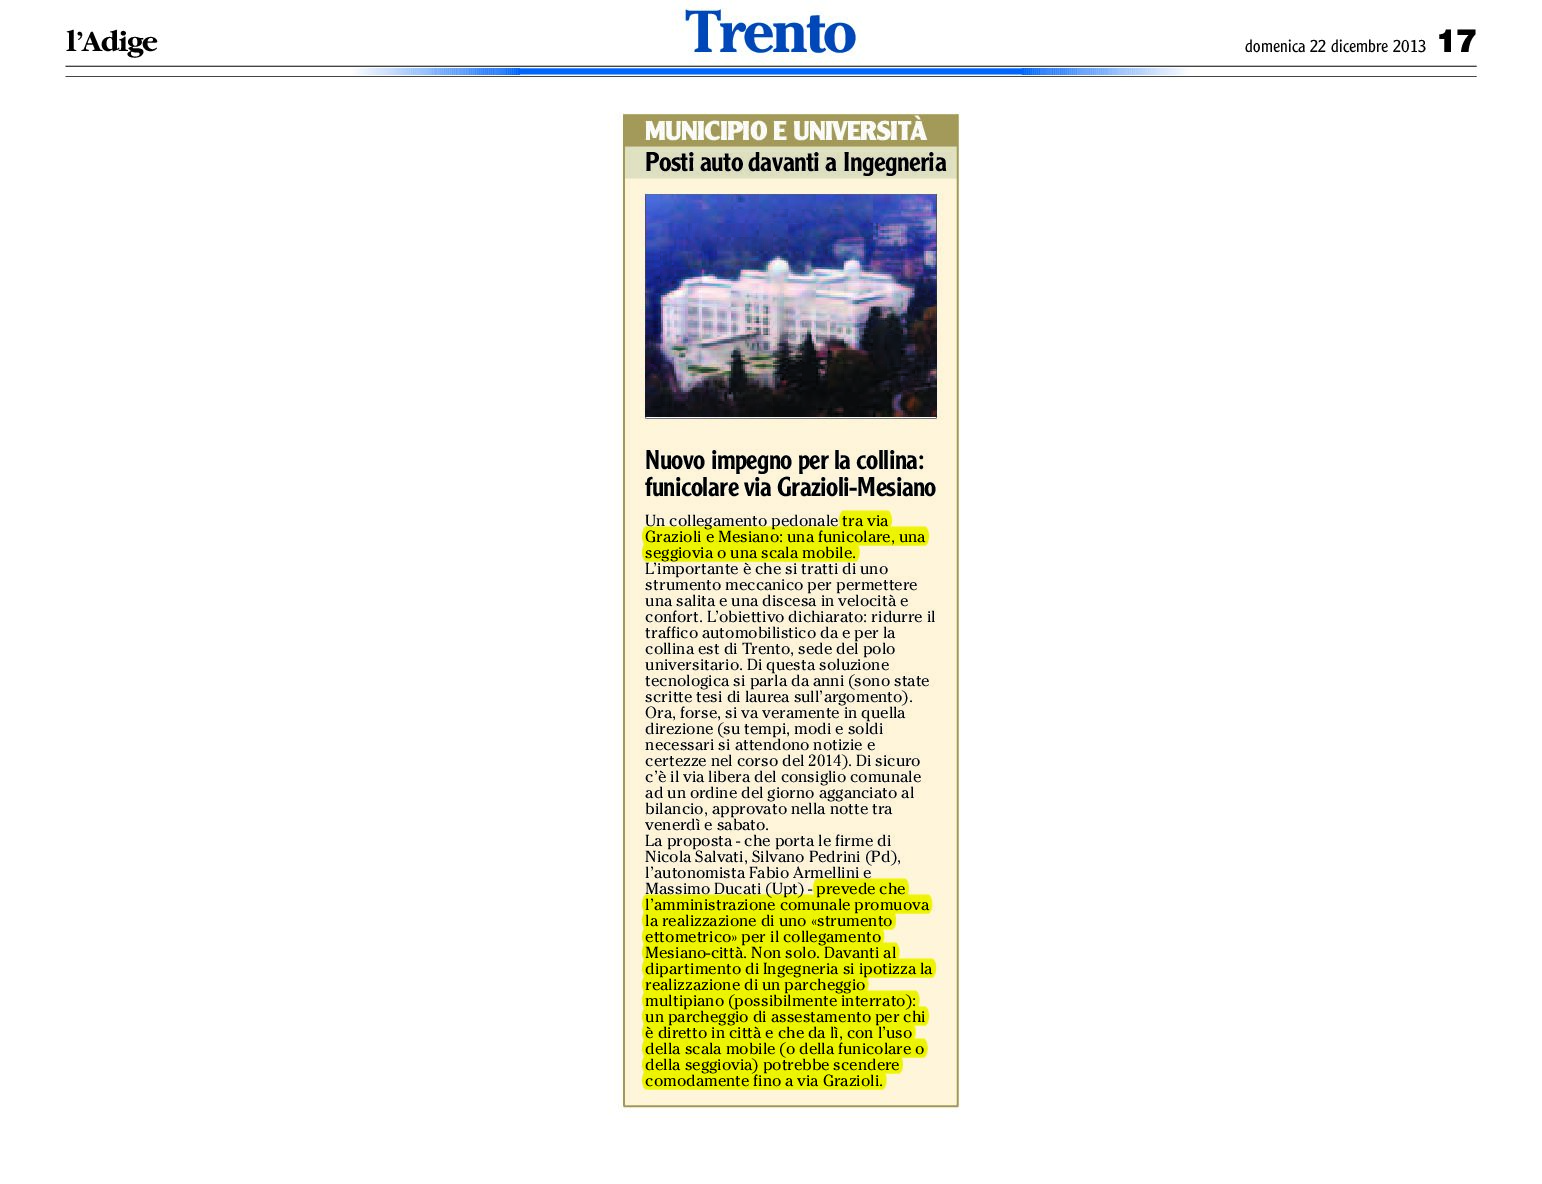 A Trento un nuovo impegno per la collina: la funicolare Grazioli-Mesiano